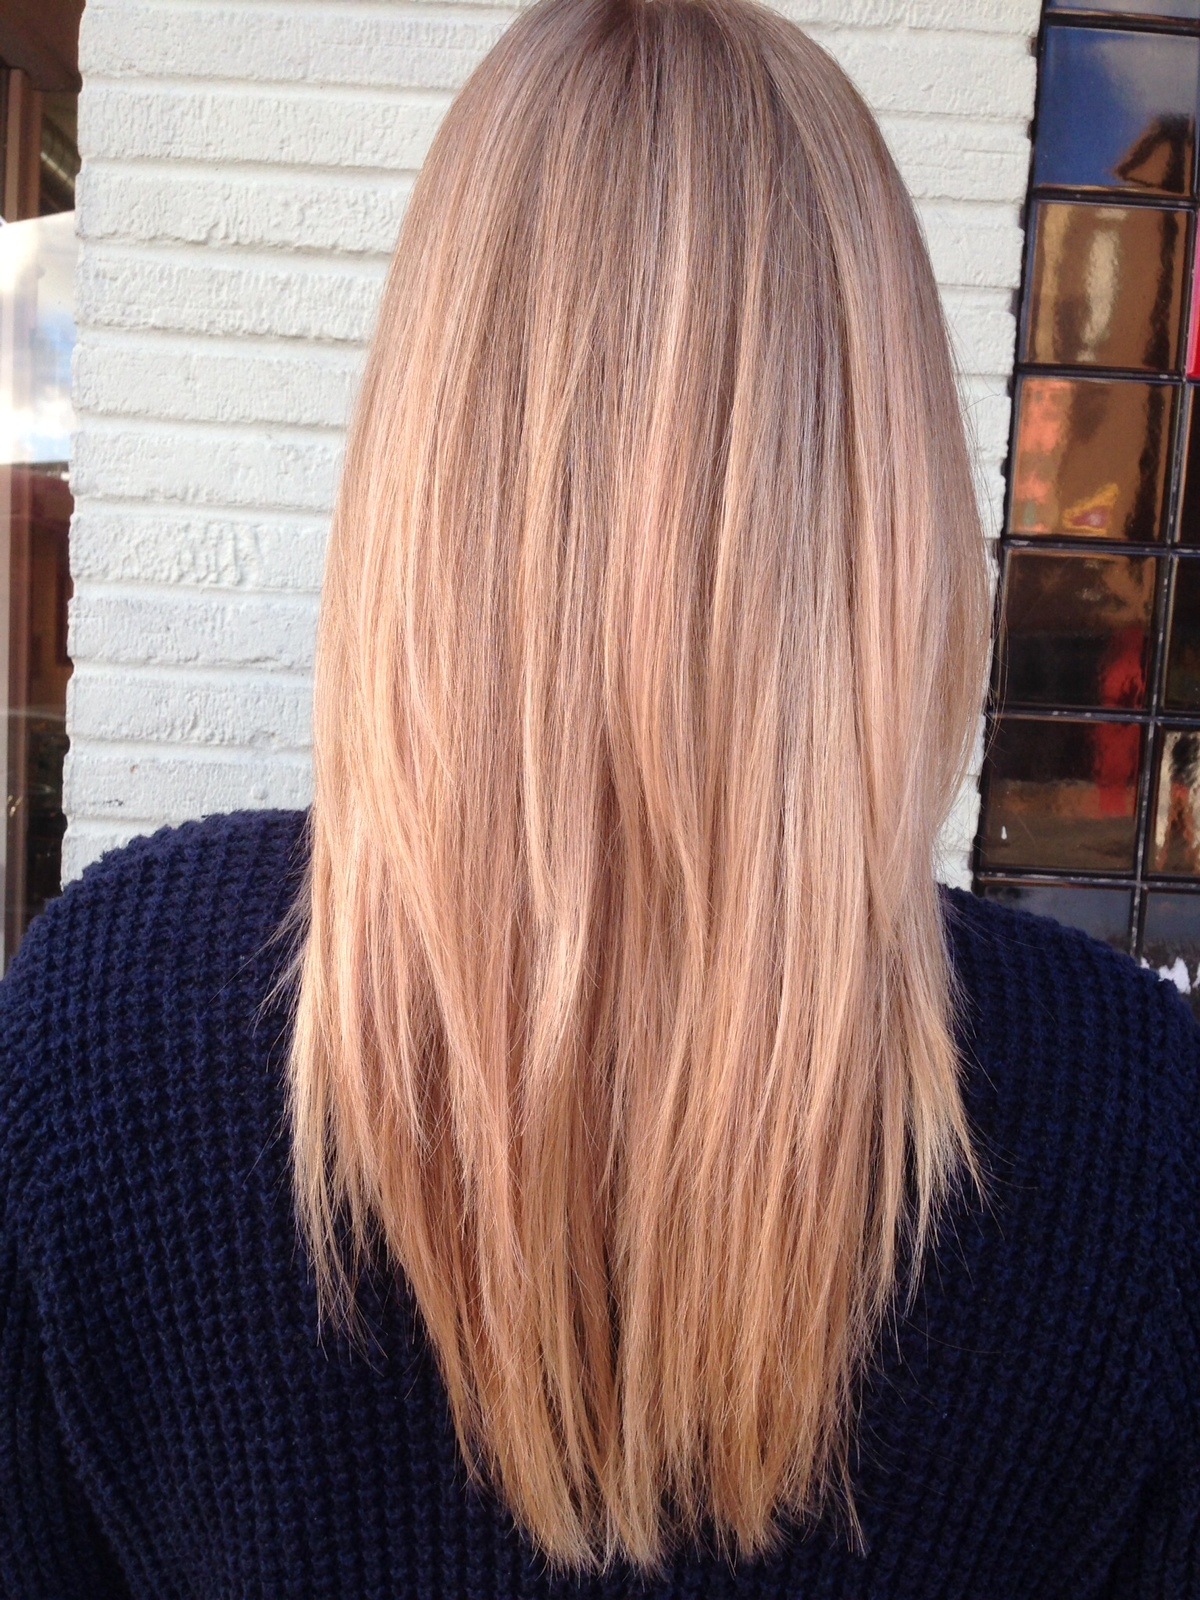 57 HQ Images Rose Blonde Hair Color : 65 Rose Gold Hair Color Ideas for 2017 - Rose Gold Hair ...